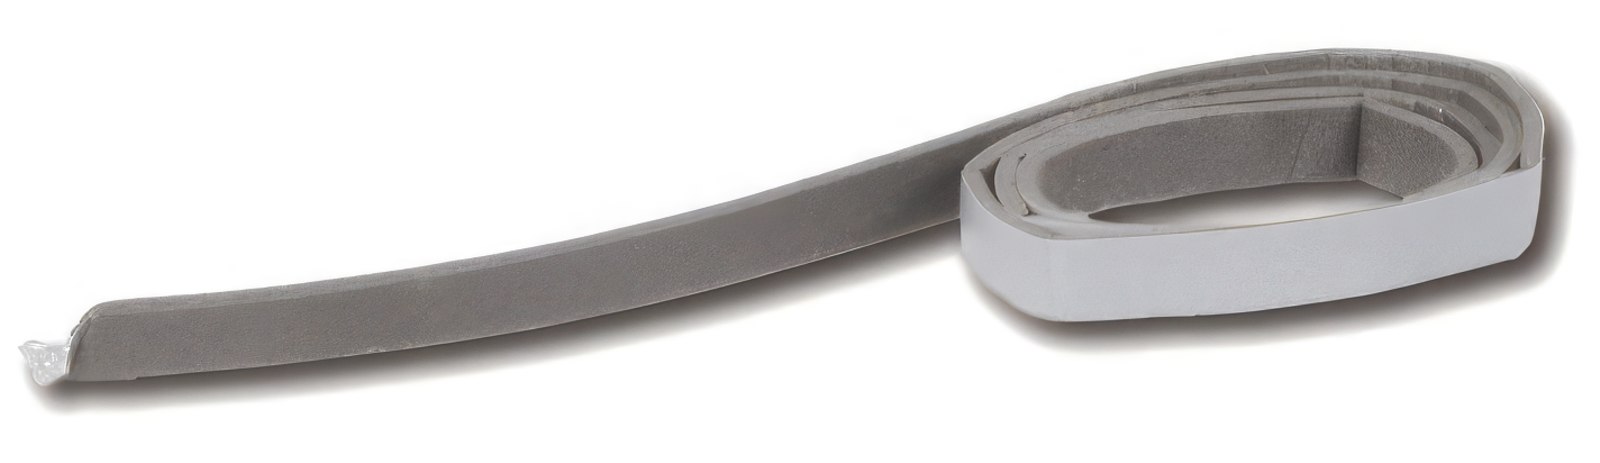 5 Meter - Dichtband 2 x 9 mm grau Schaumstoffband selbstklebend zur Lautsprecherabdichtung (Meterware)